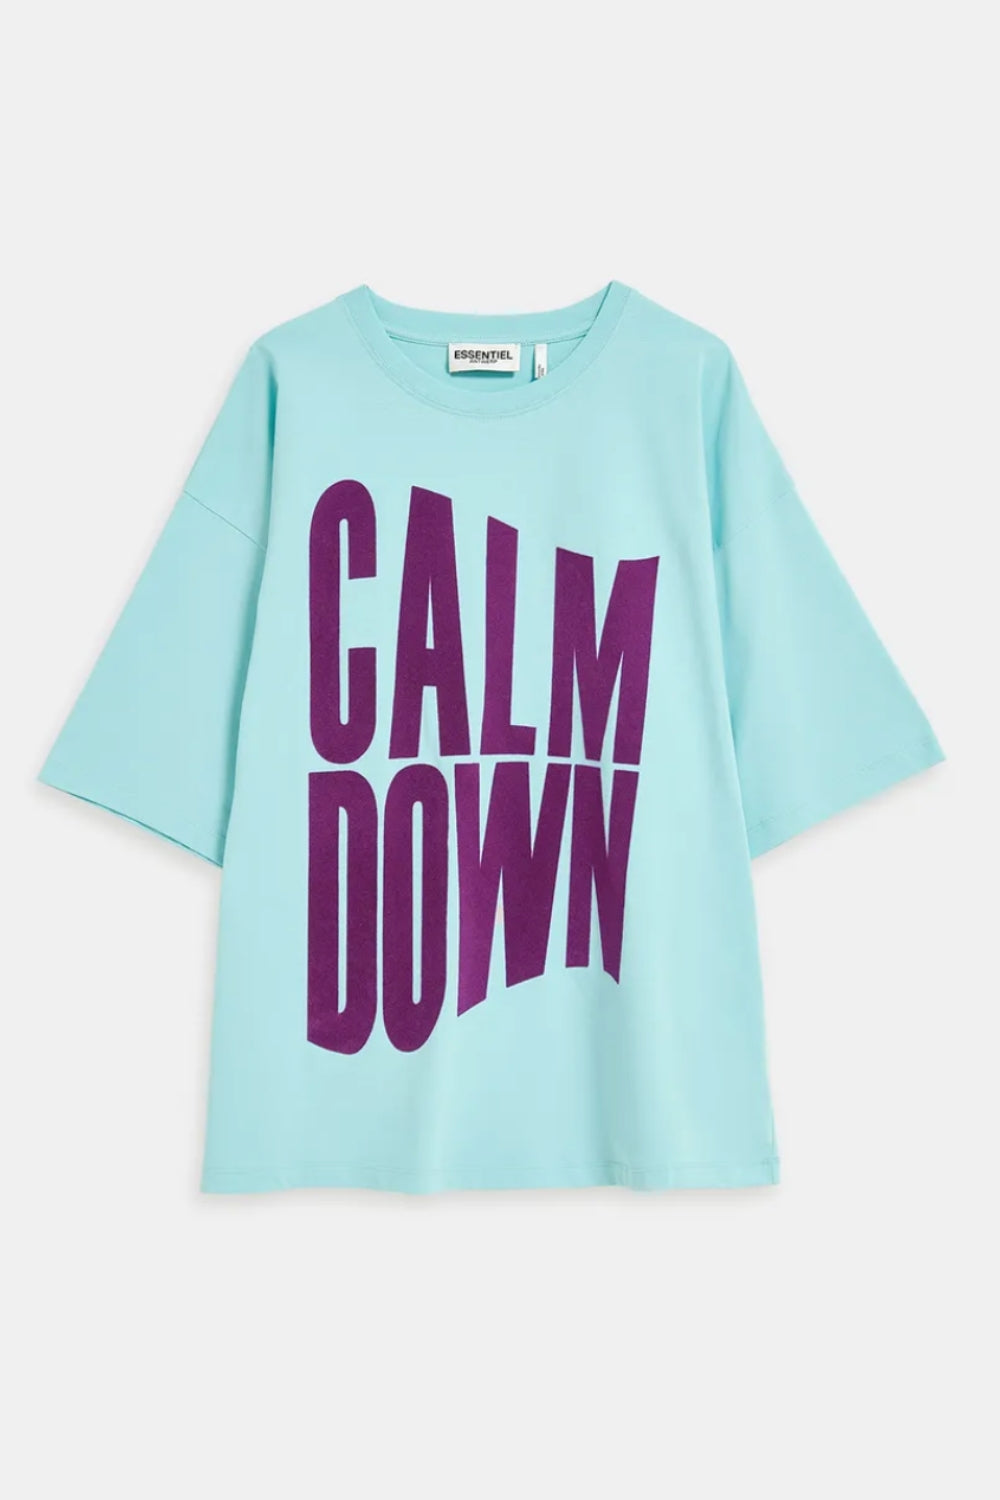 Essentiel Antwerp | Blue Organic Cotton 'Calm Down' T-shirt